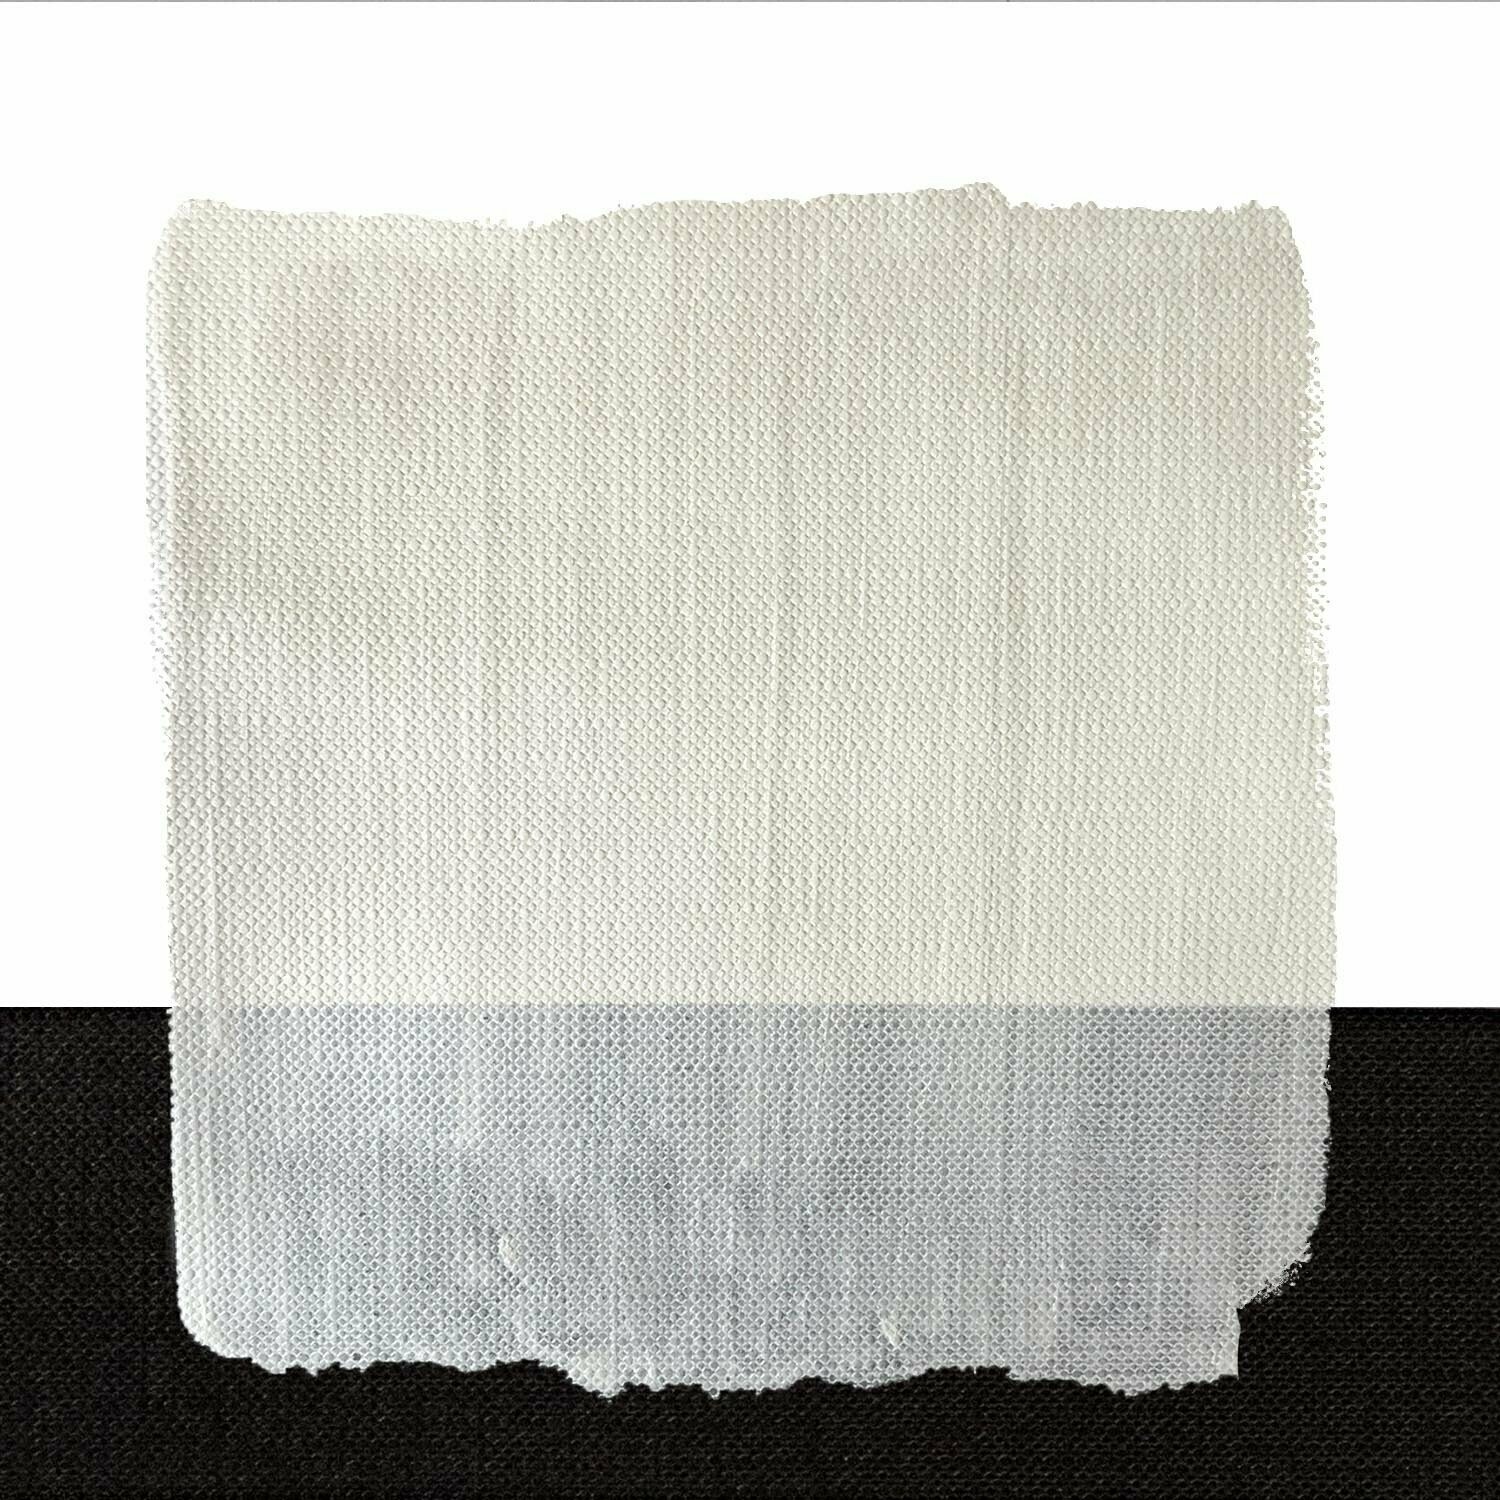 Idea Colore per Stoffa n°016 - Bianco perla-60 ML - Maimeri